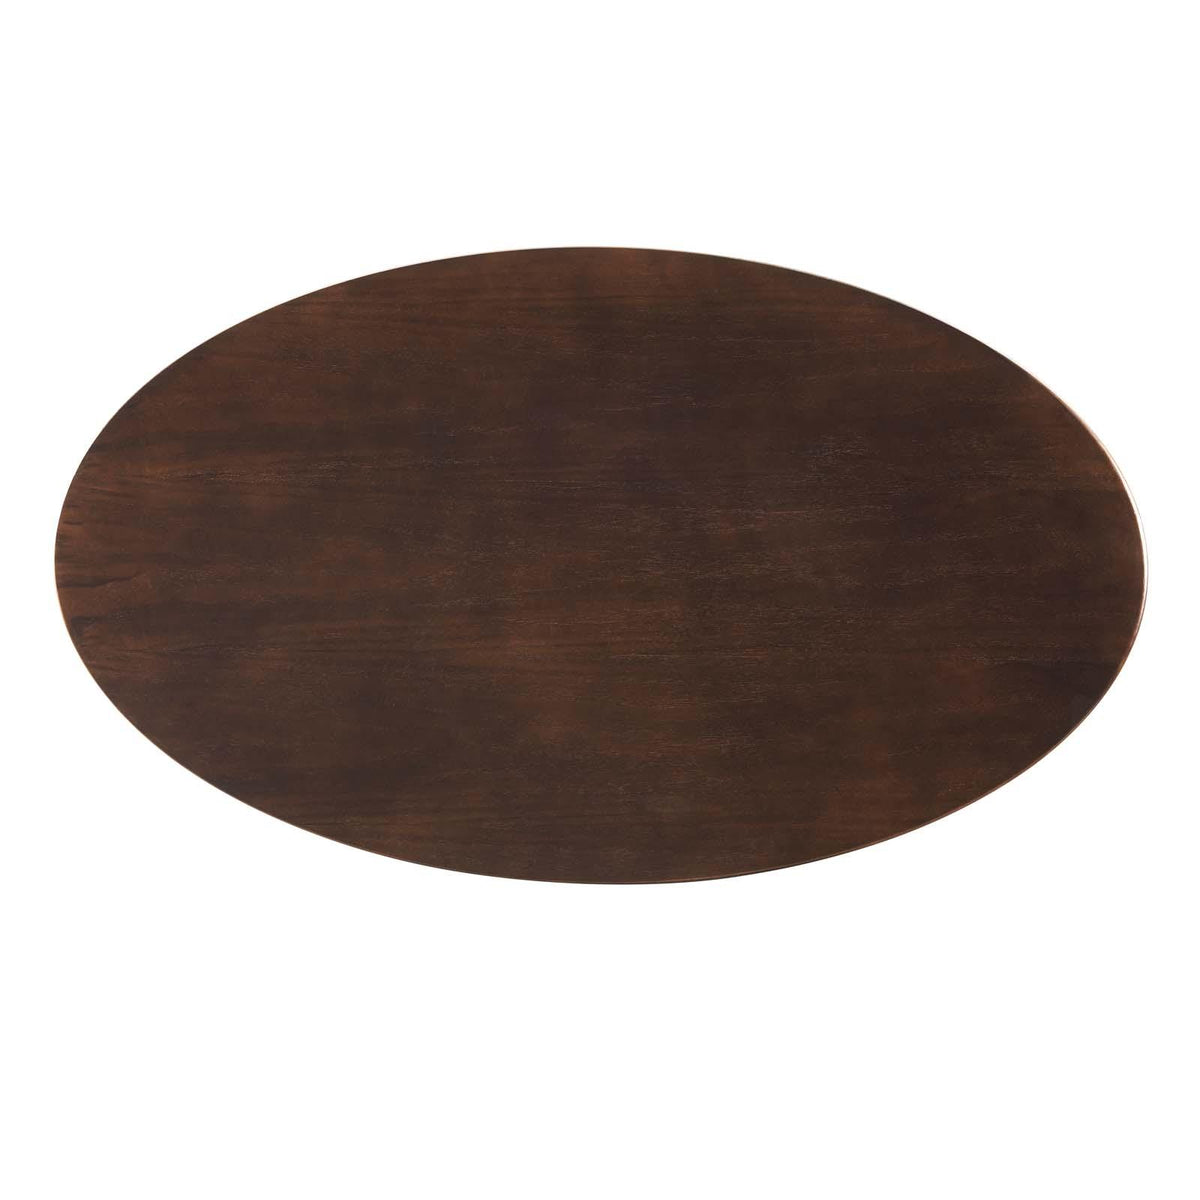 Modway Furniture Modern Lippa 48" Oval Wood Coffee Table - EEI-5279